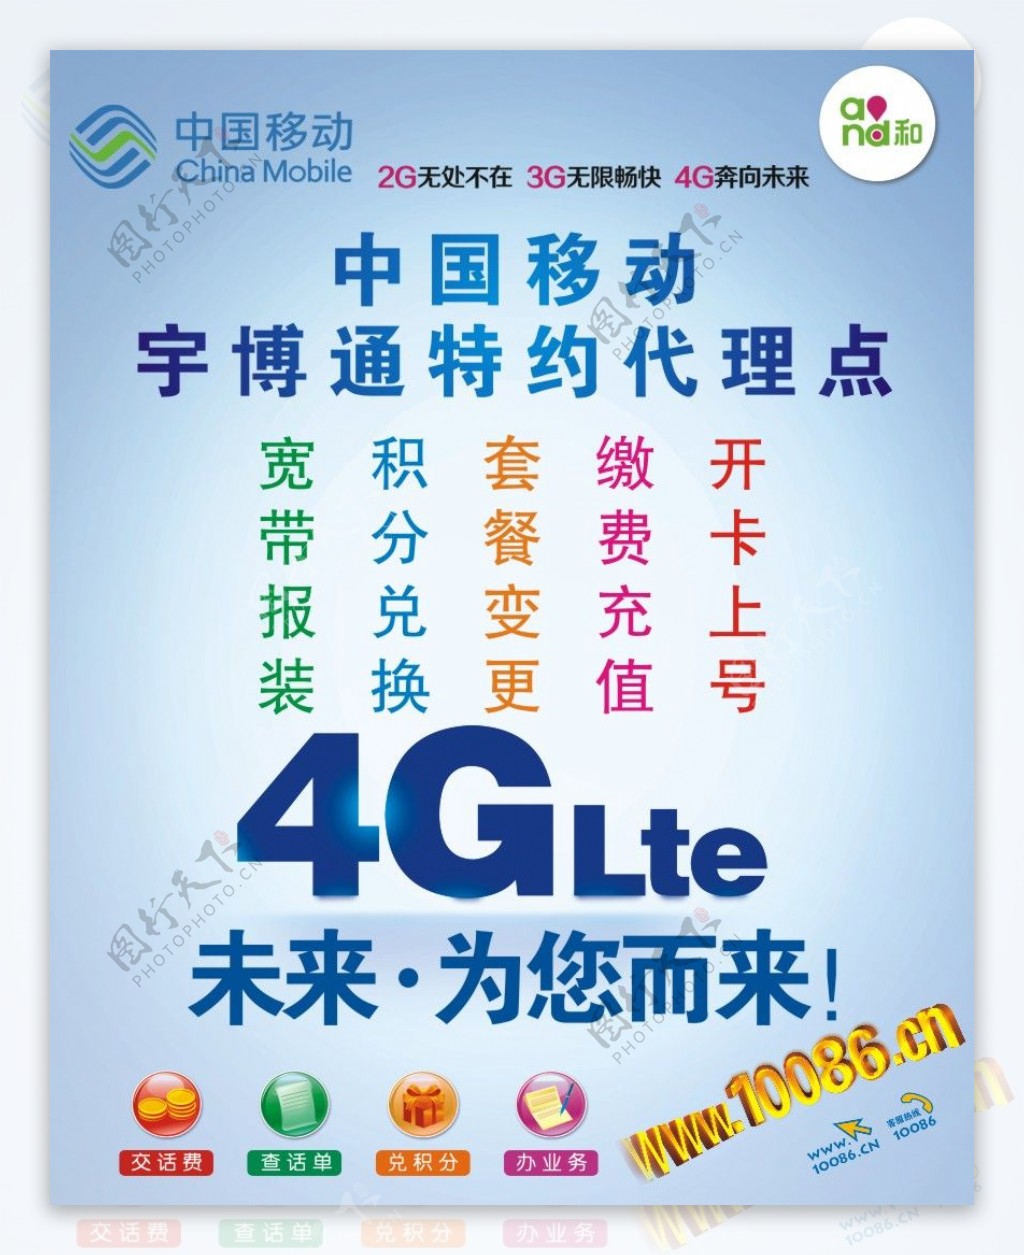 通信公司标志中国移动logo模板